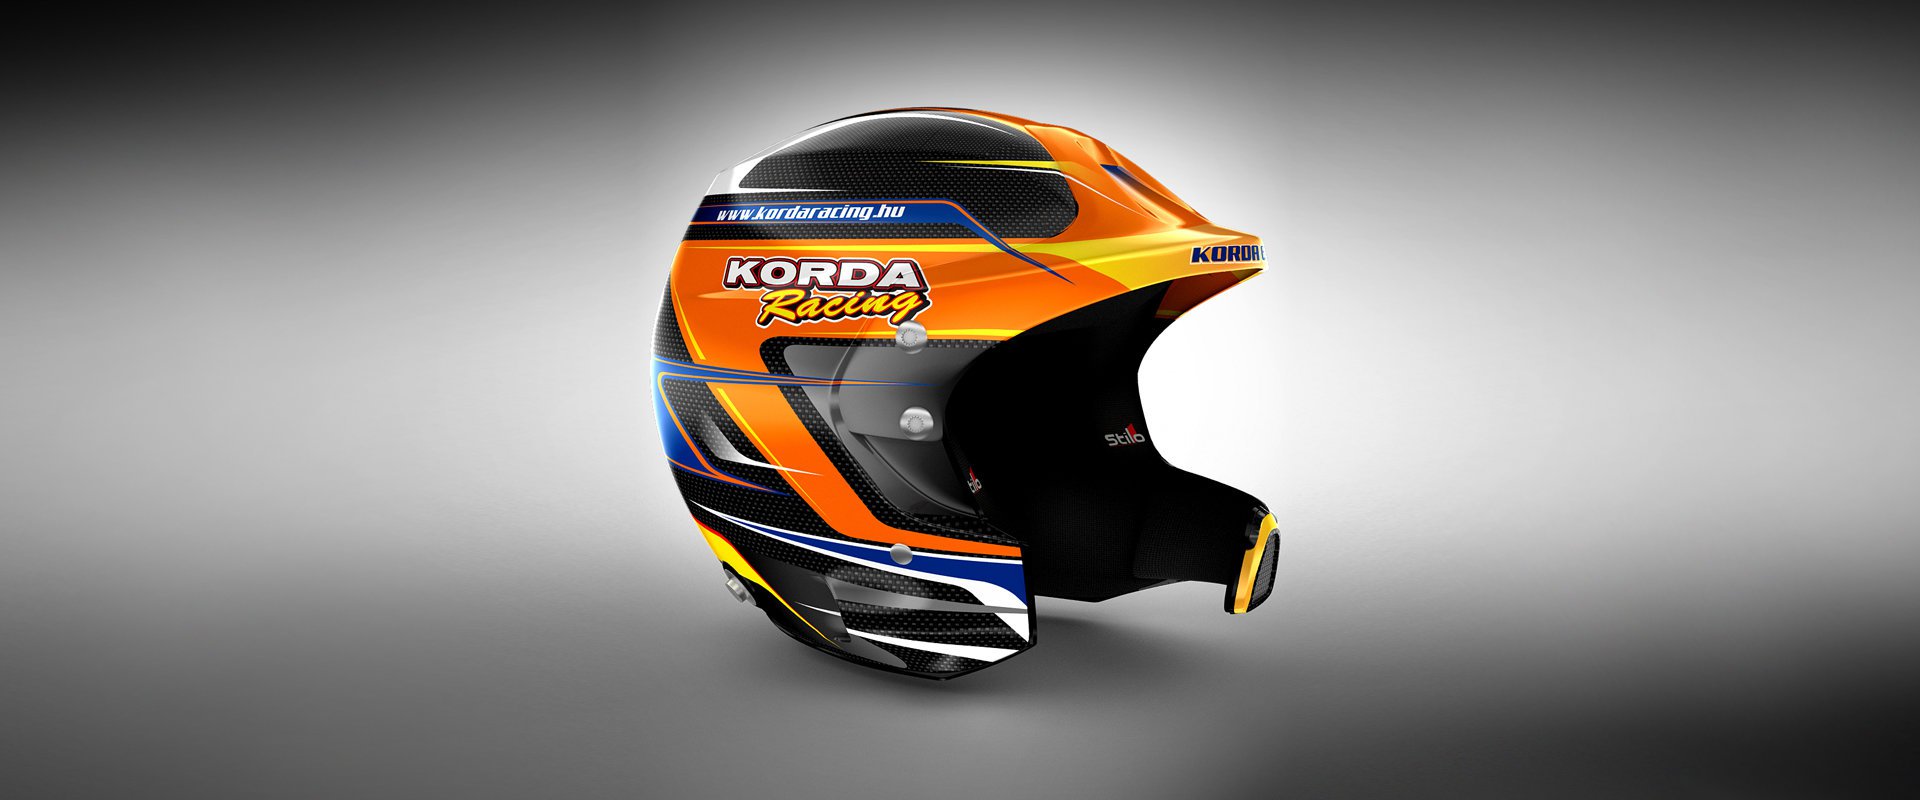 Korda Racing #3